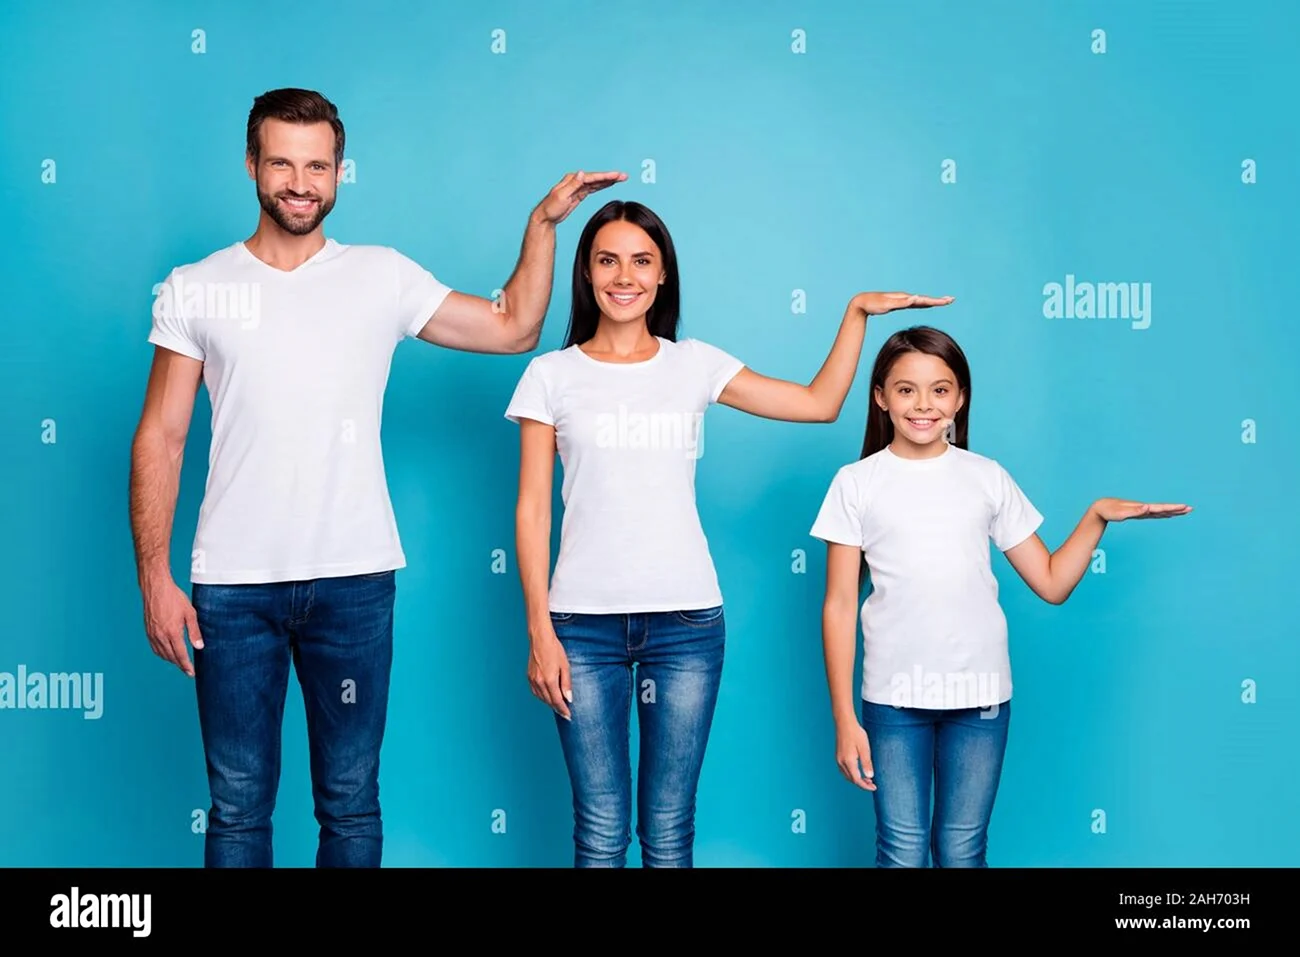 Фото в белых футболках и джинсах семья